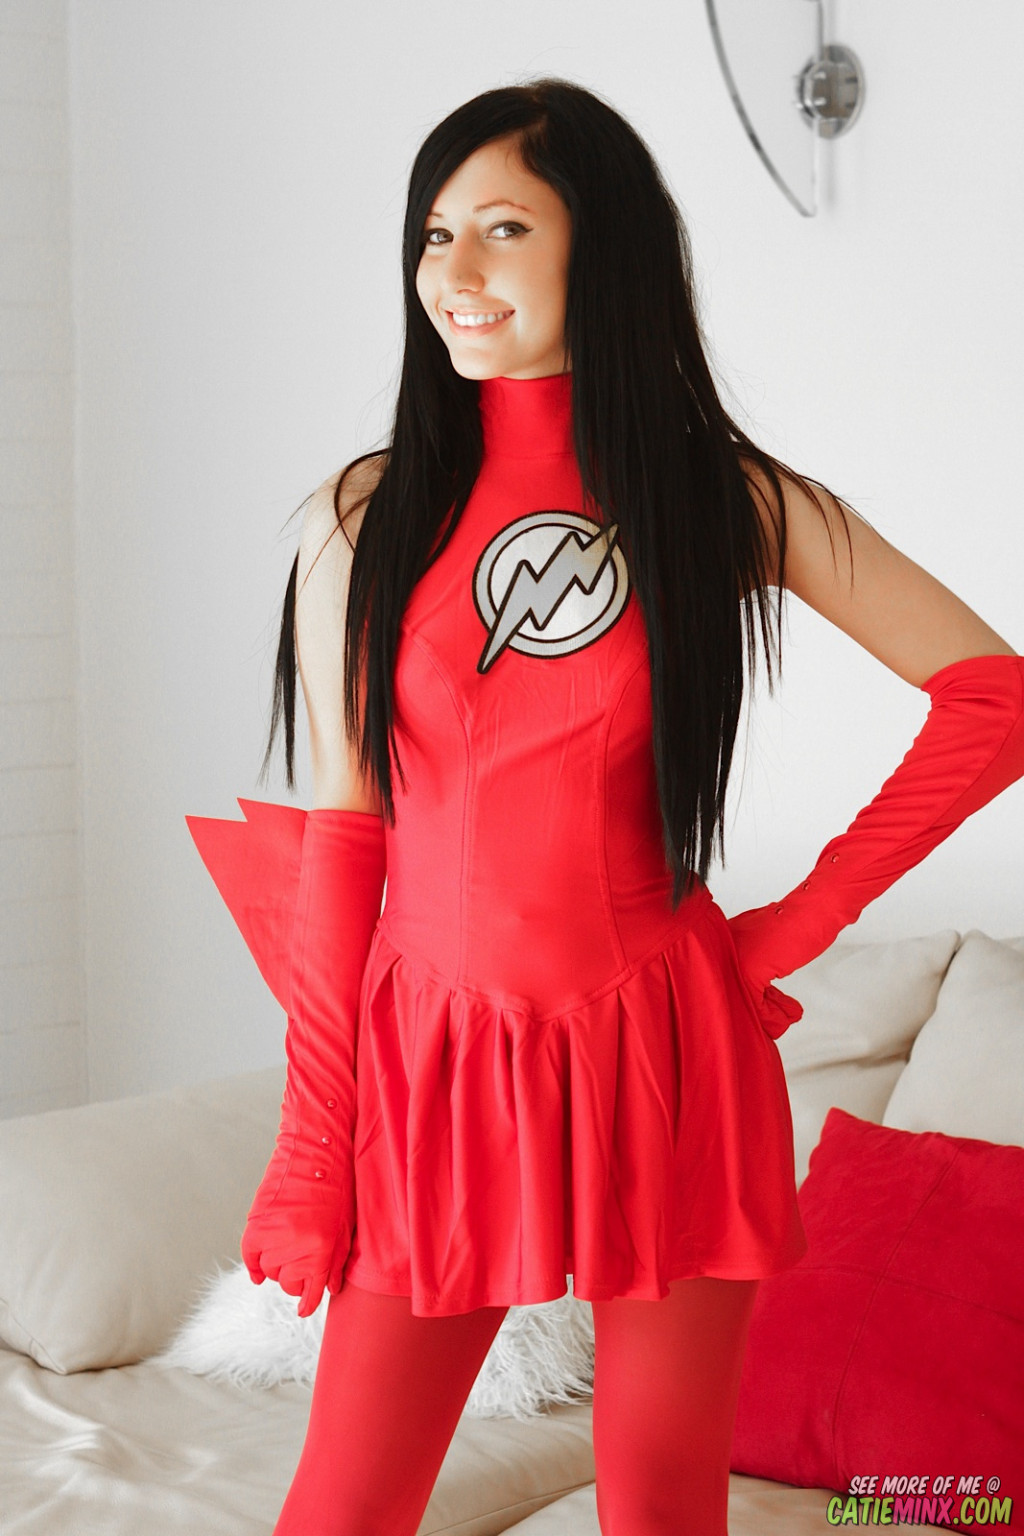 Catie minx diventa il flash un supereroe sexy
 #70204302